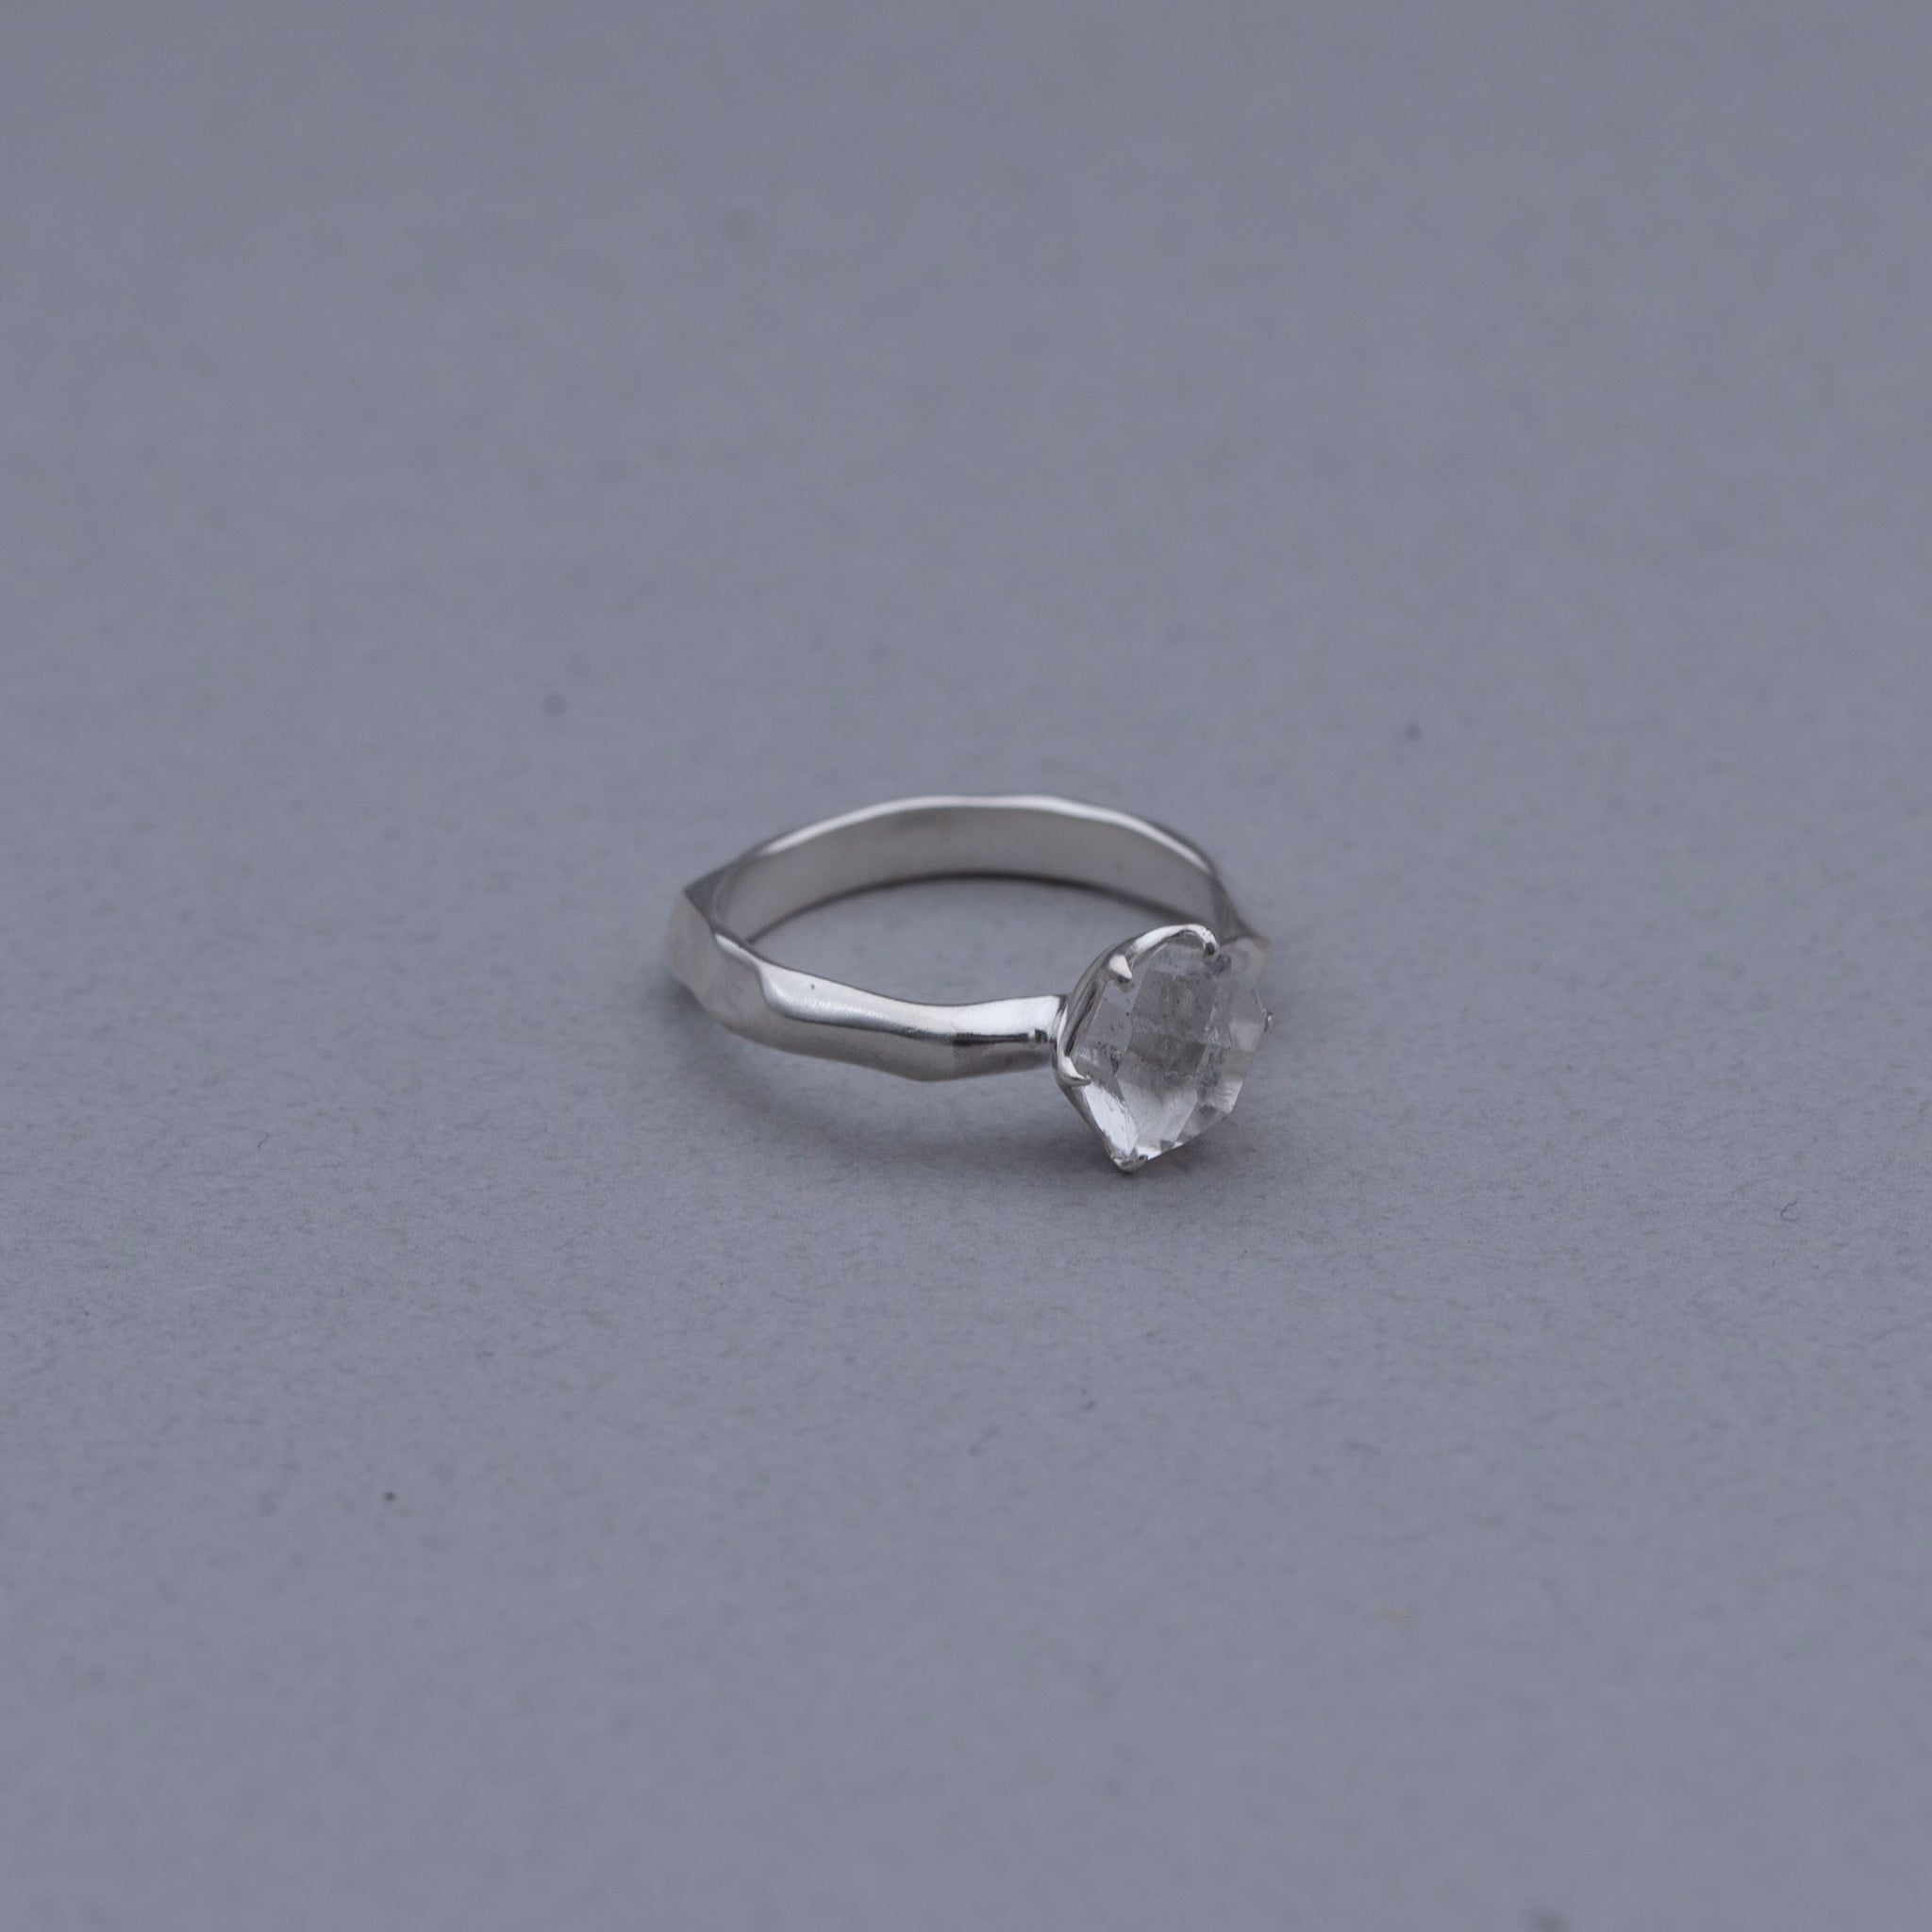 Quartz M / Ring - Silver925